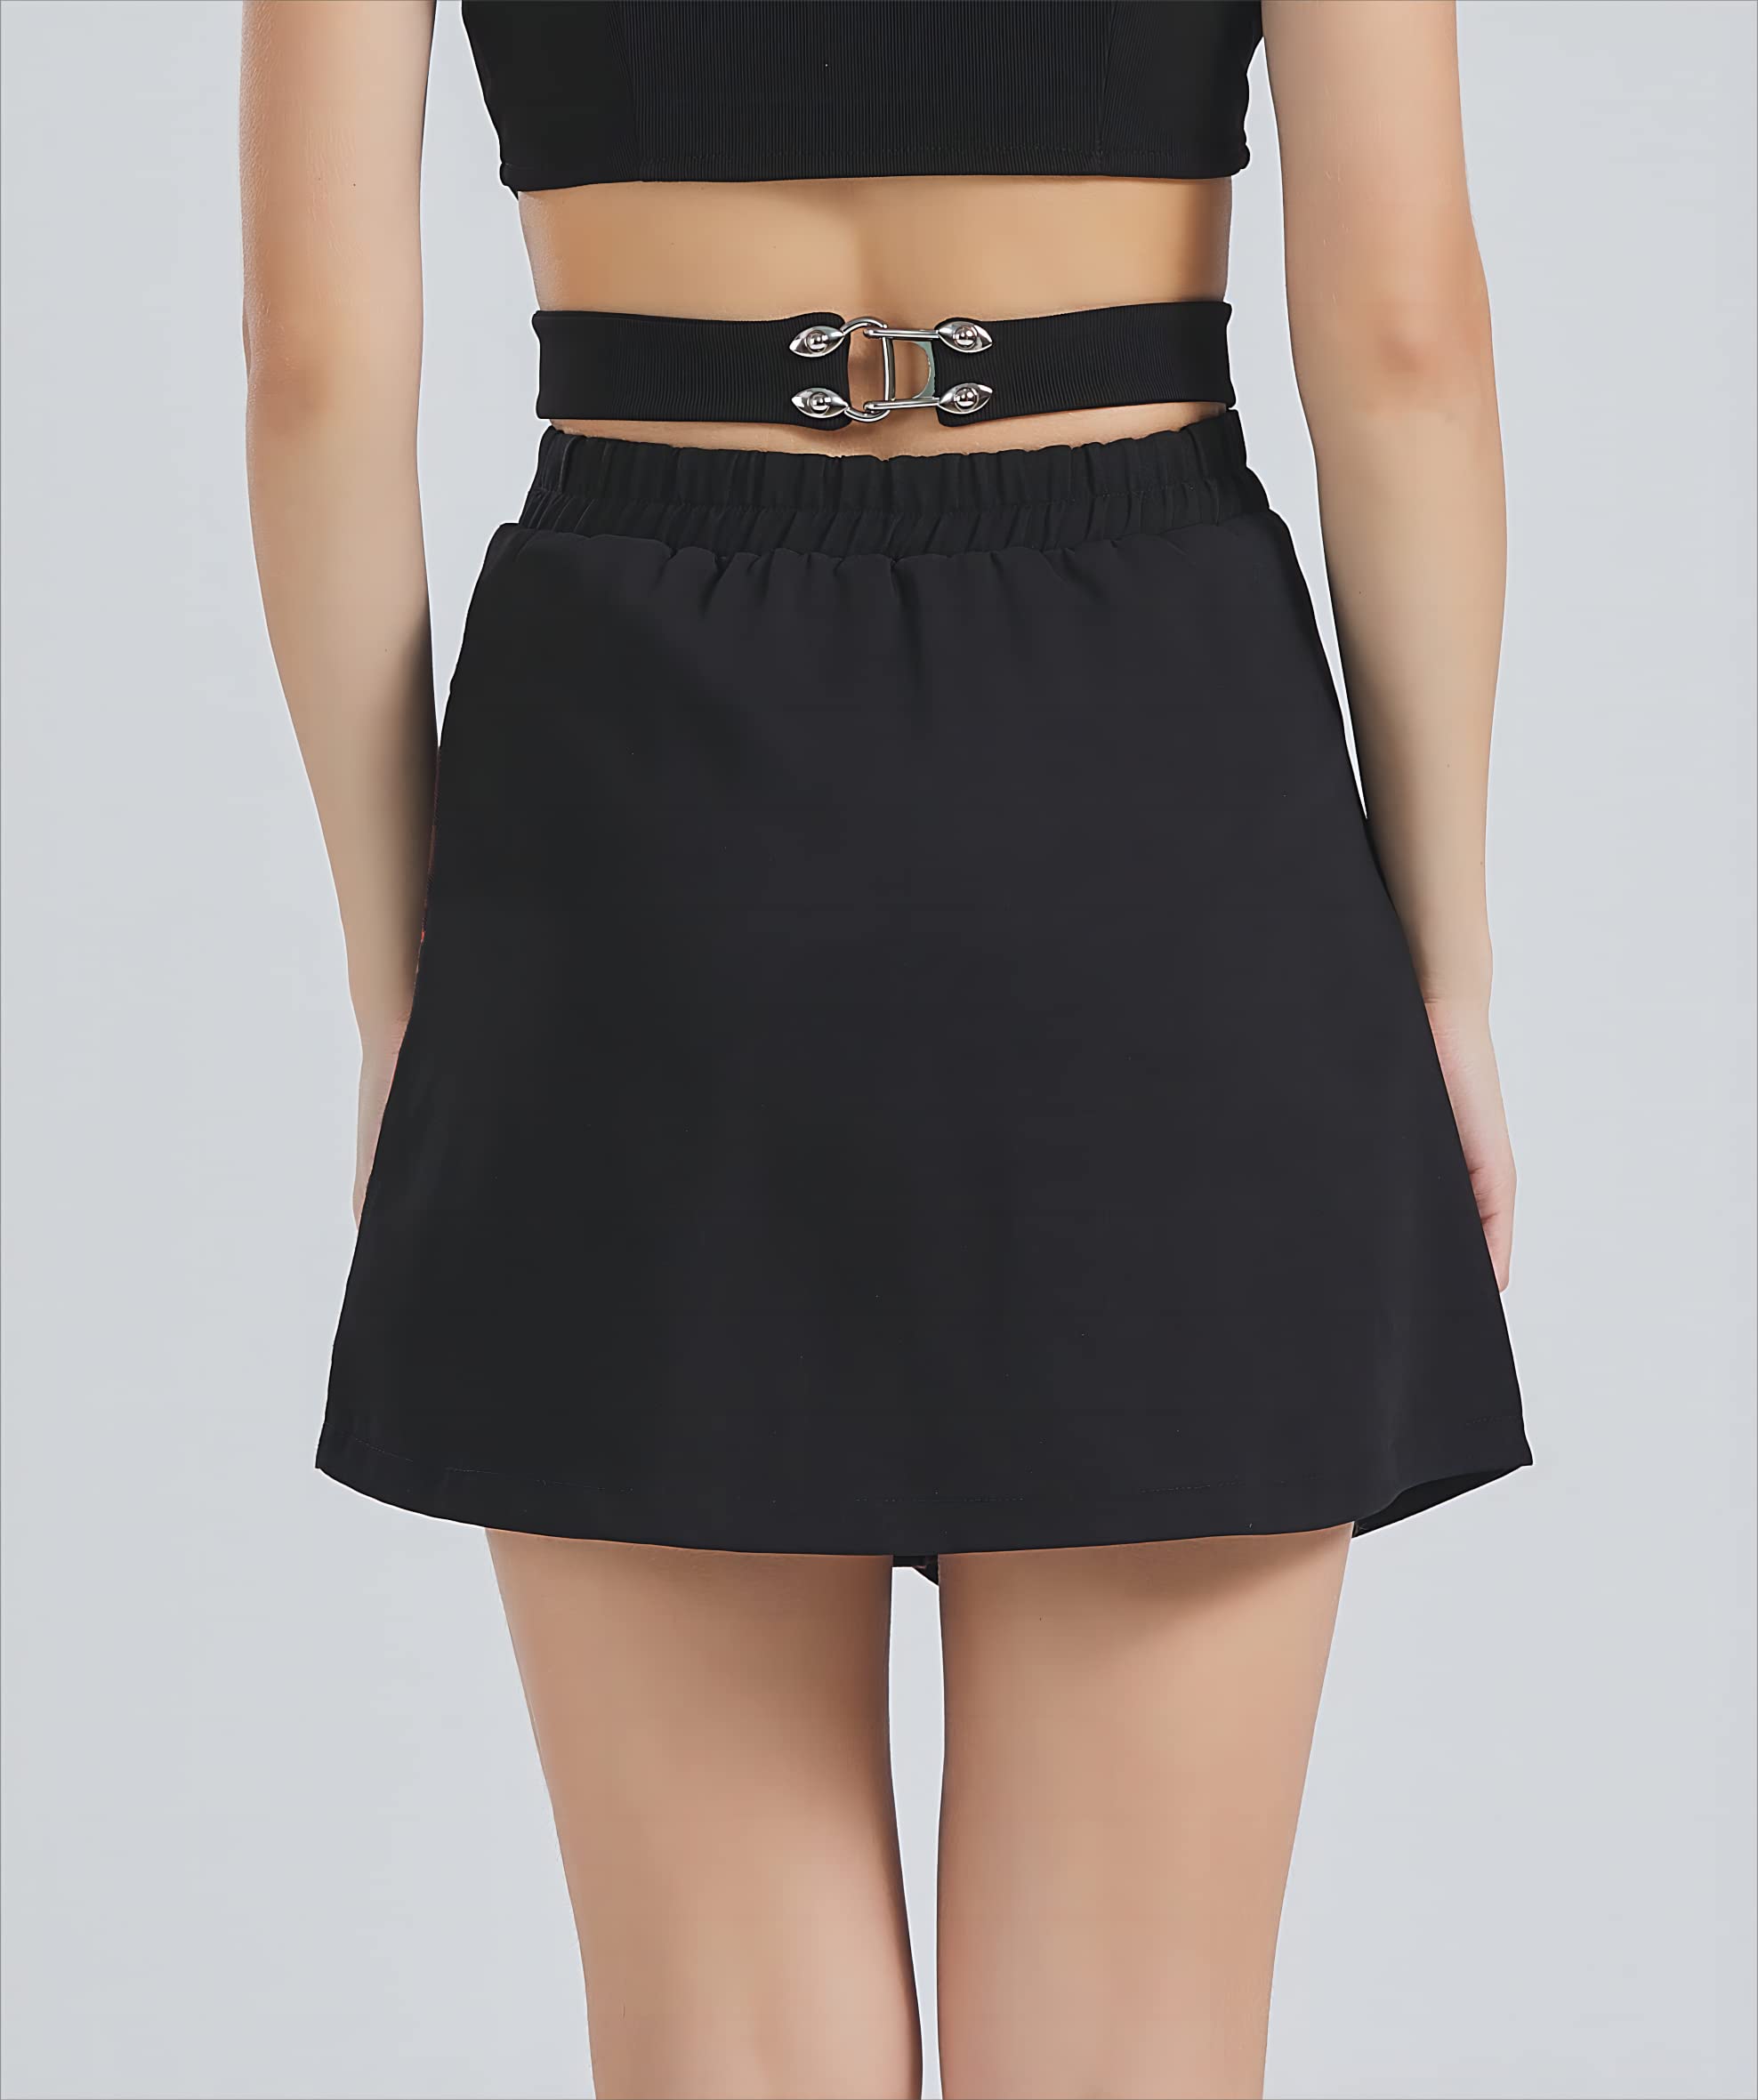 Women's Gothic Skirt Basic Pleated Skirt Plaid Skirt Casual Skirt